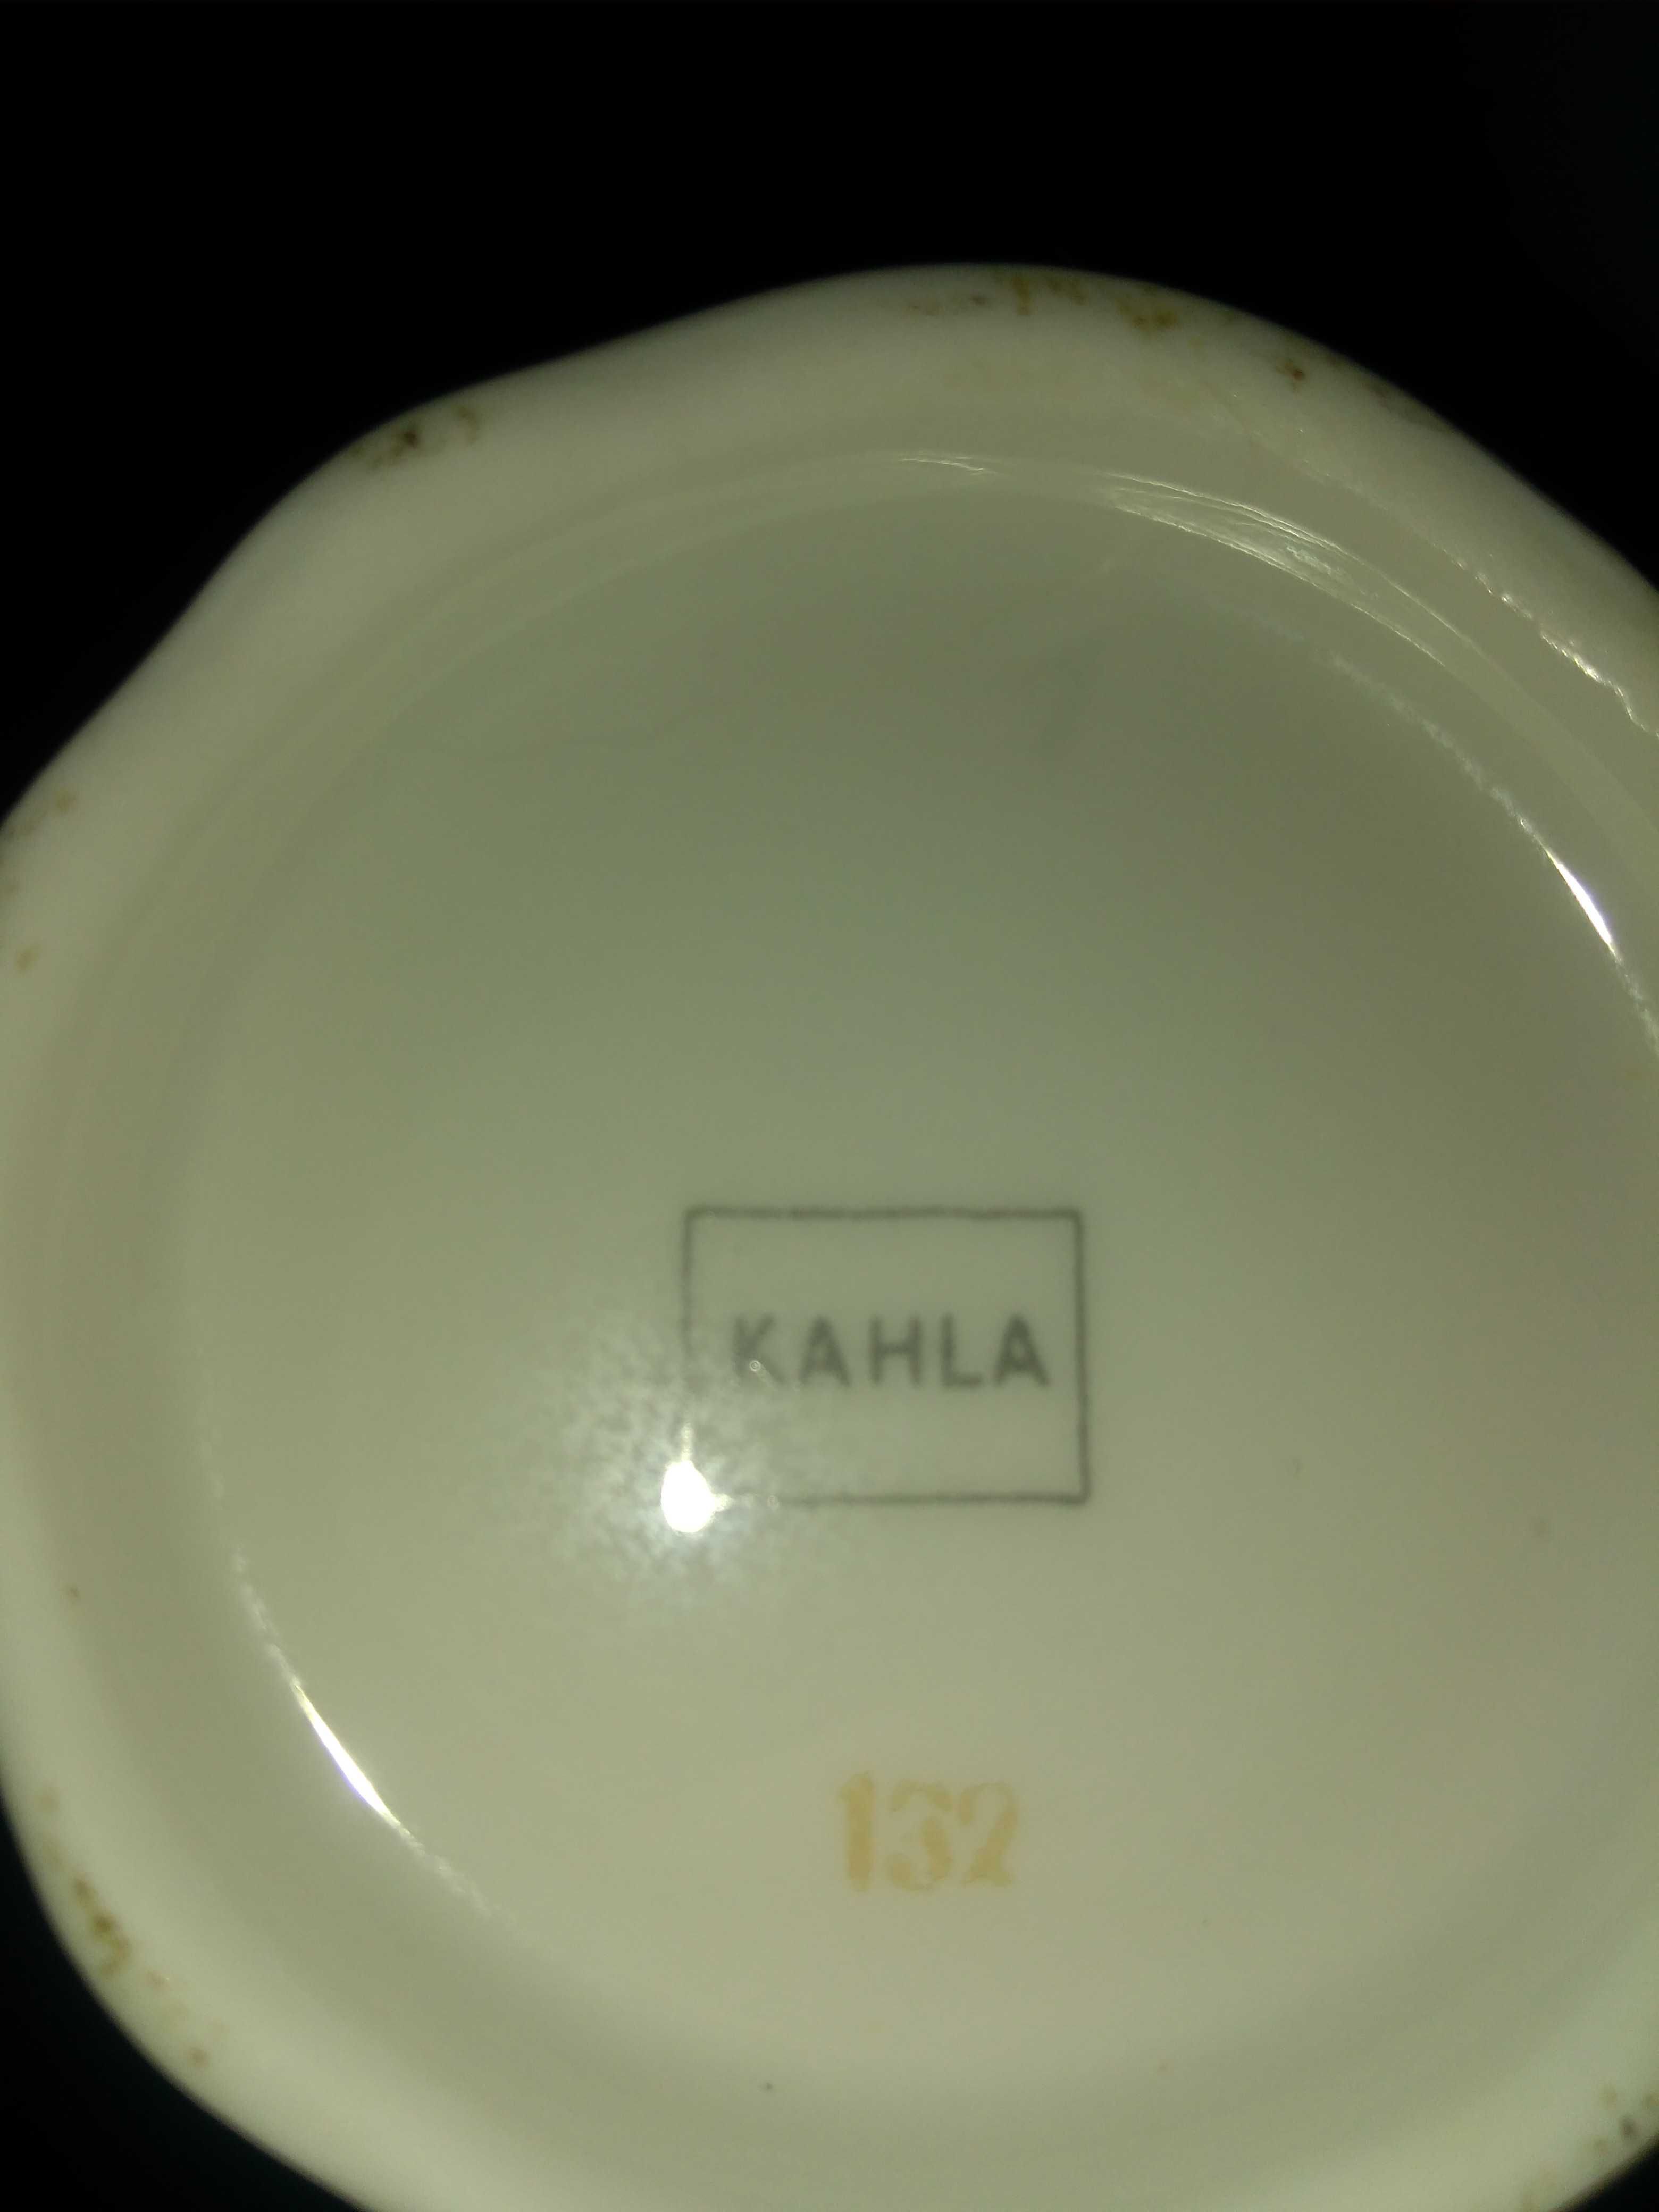 Два чайника и молочник KOHLA (фарфор) привезены из ГДР в 1956 г.